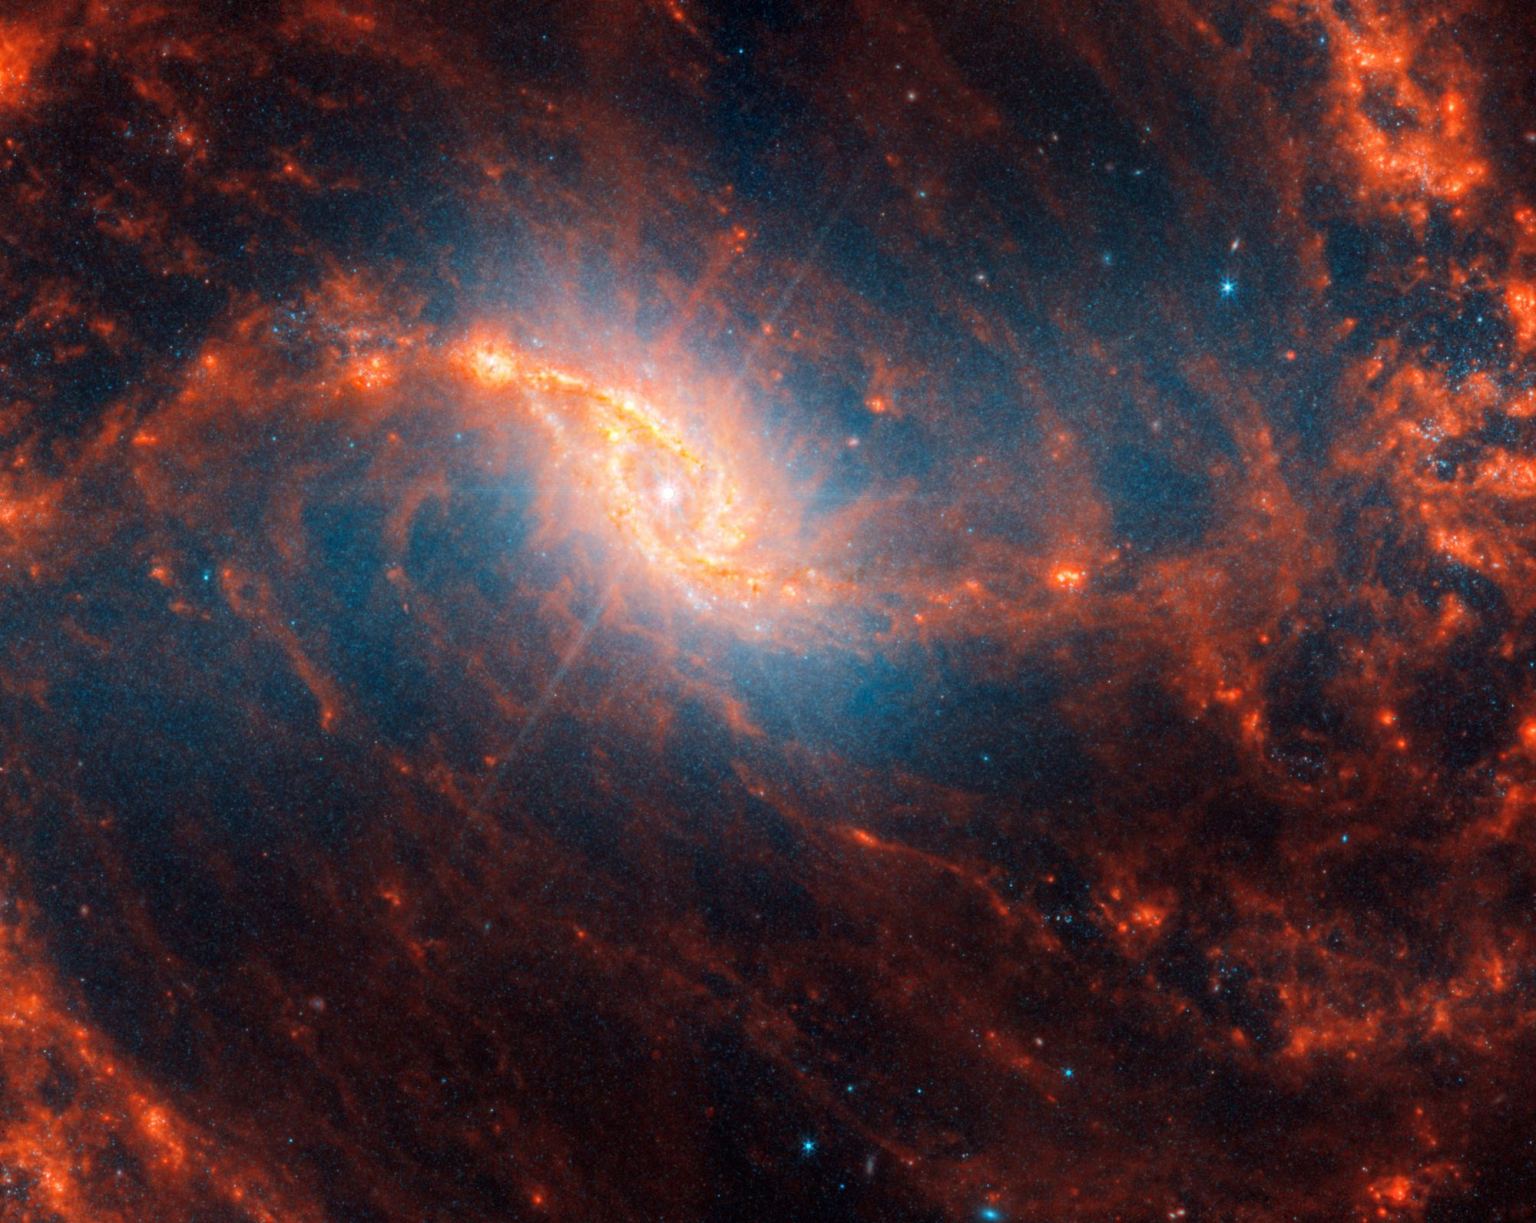 Κεντρική λεπτομέρεια σπειροειδούς γαλαξία με λάμψη φακού σαν αιχμές στο κέντρο